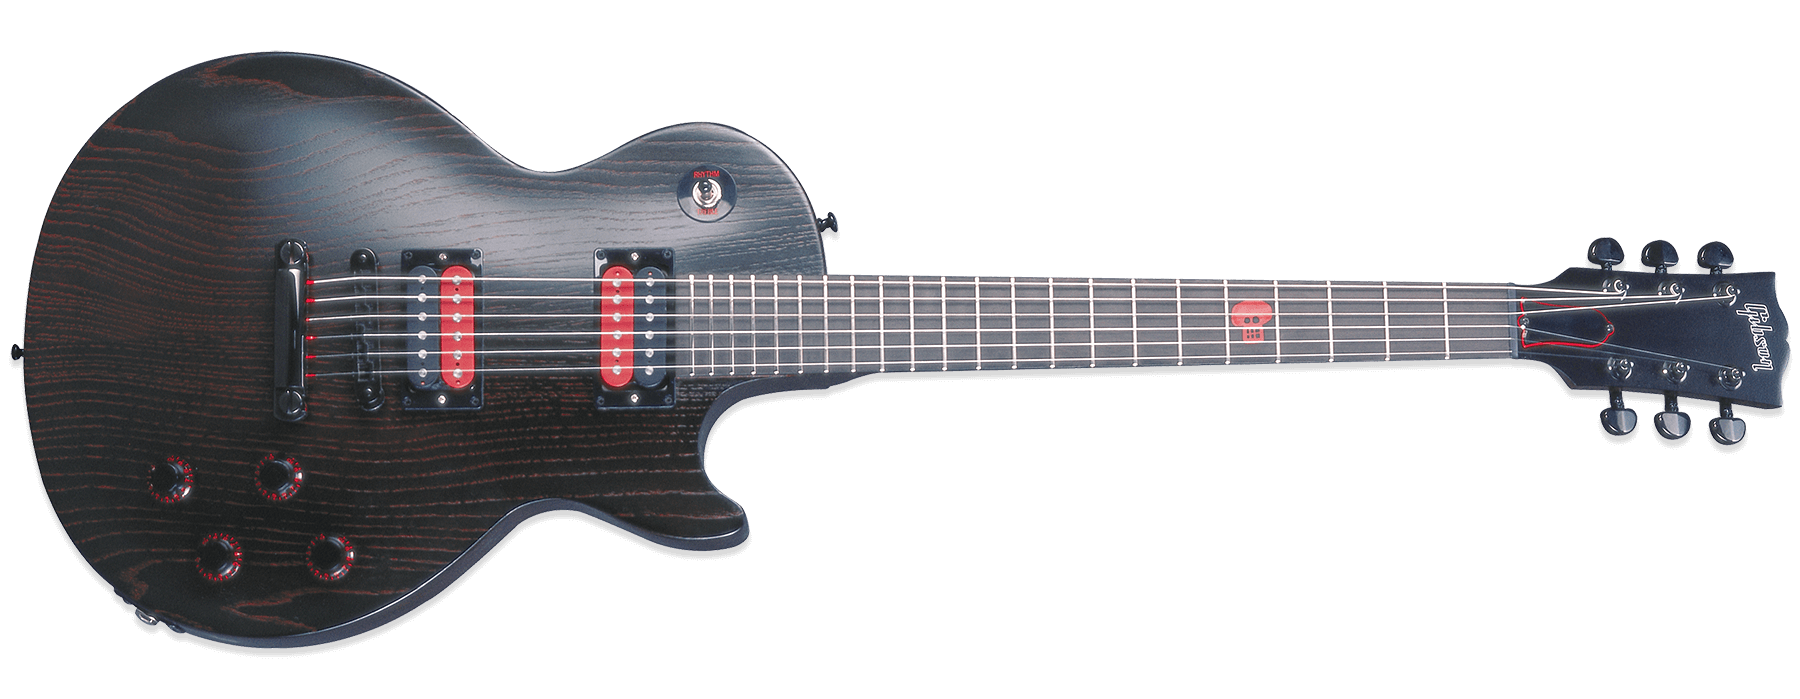 Gibson Les Paul Voodoo 2002 JuJu